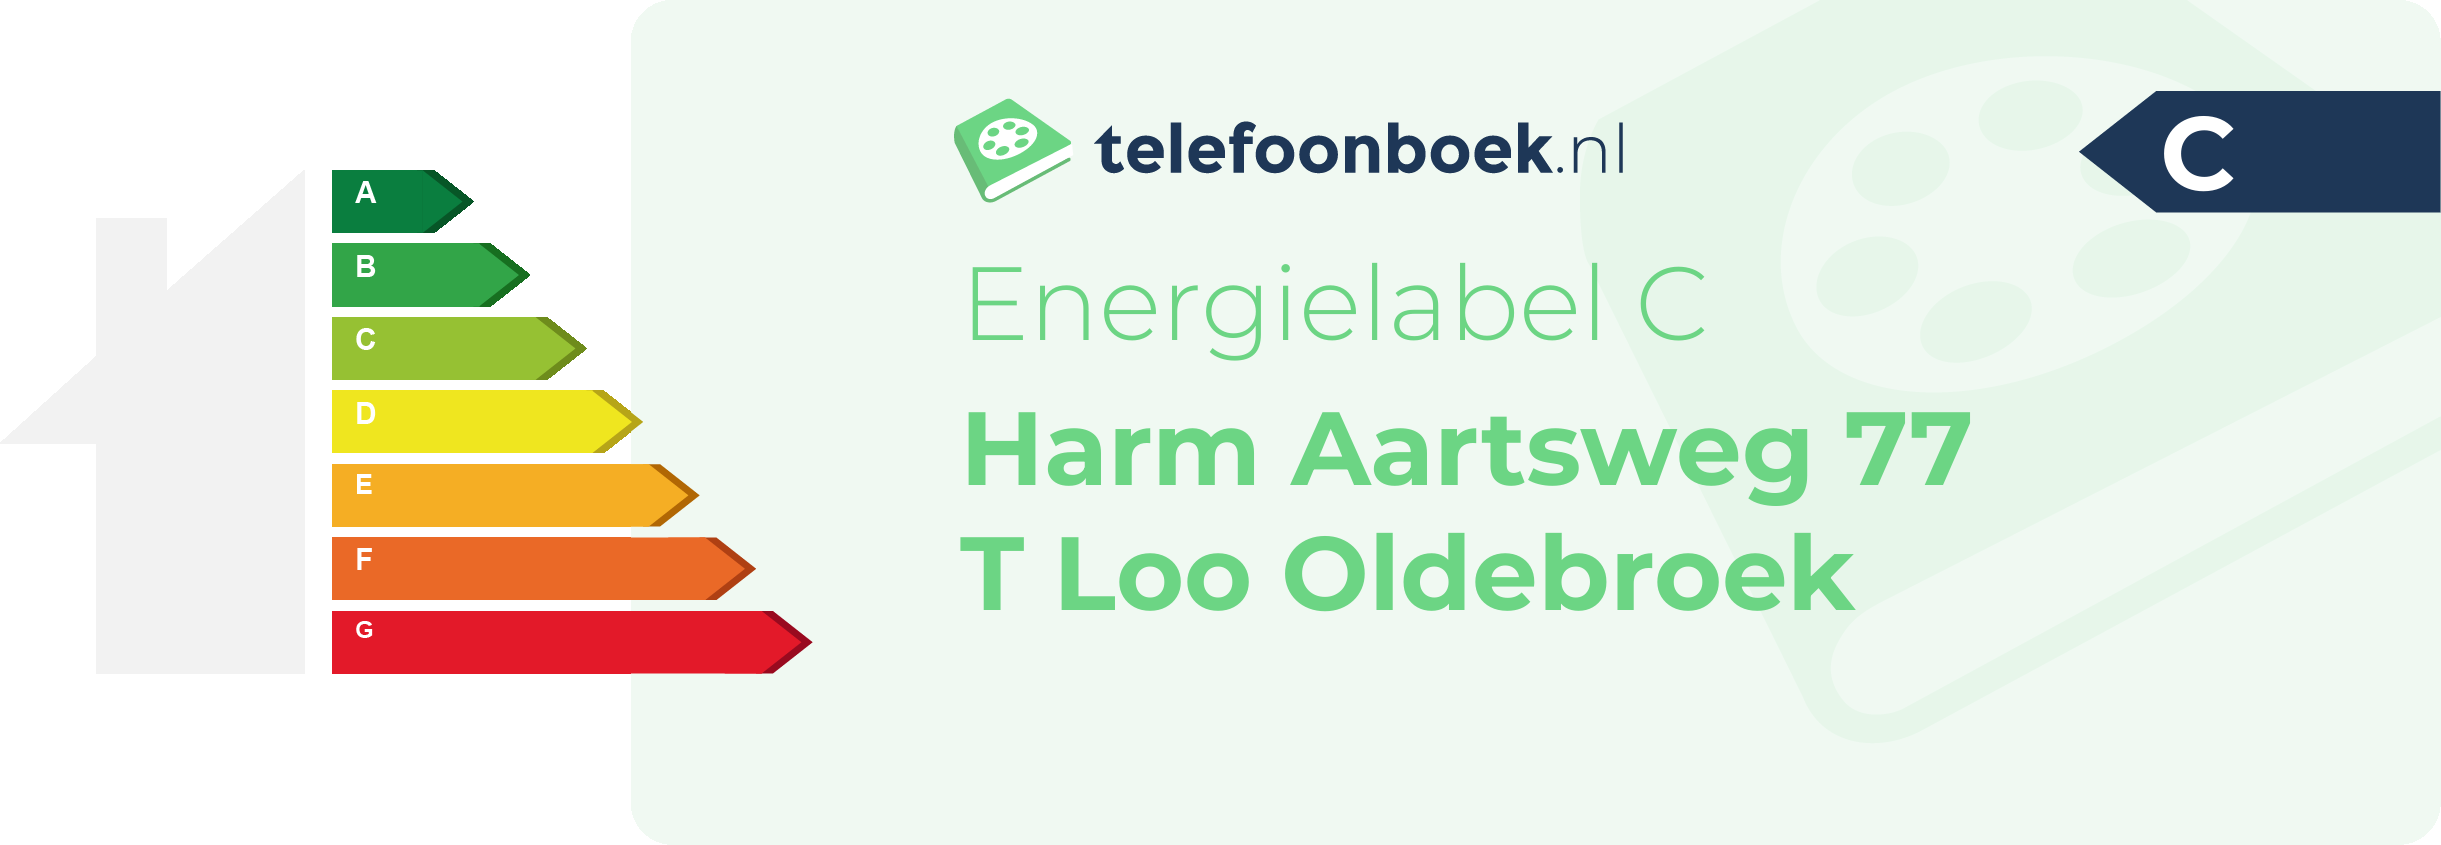 Energielabel Harm Aartsweg 77 T Loo Oldebroek